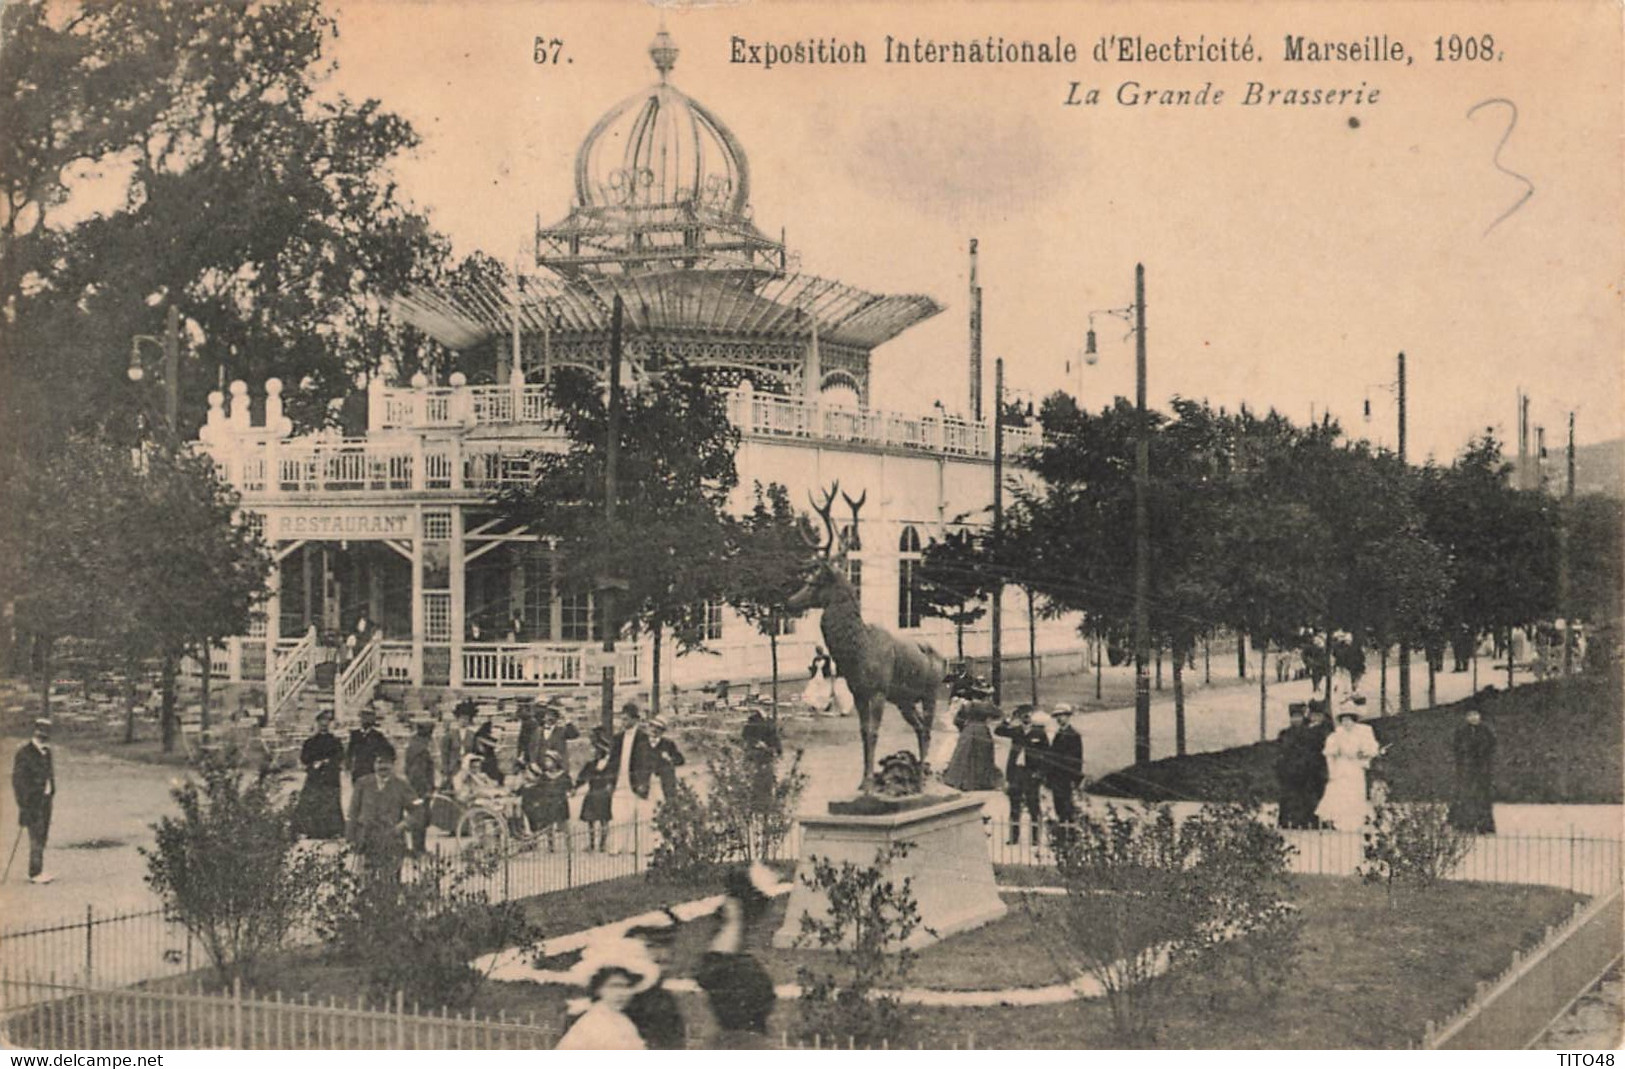 France (13 Marseille) - Exposition Internationale D'Electricité 1908 - La Grande Brasserie - Exposition D'Electricité Et Autres